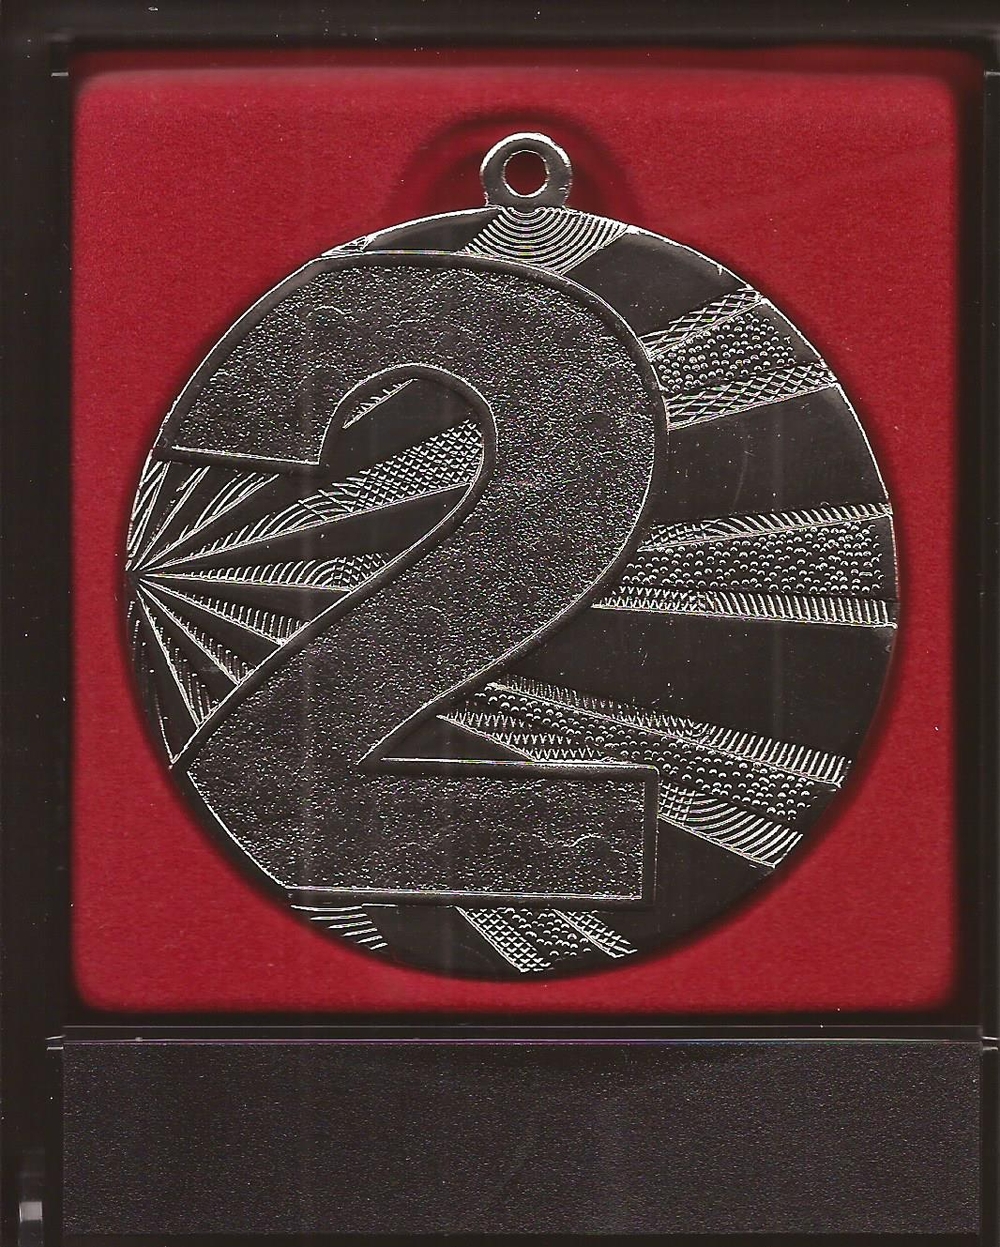 Srebrny medal  na IX Ogólnopolskiej Konferencji Naukowej "INNOWACJE W PRAKTYCE" (rewers)